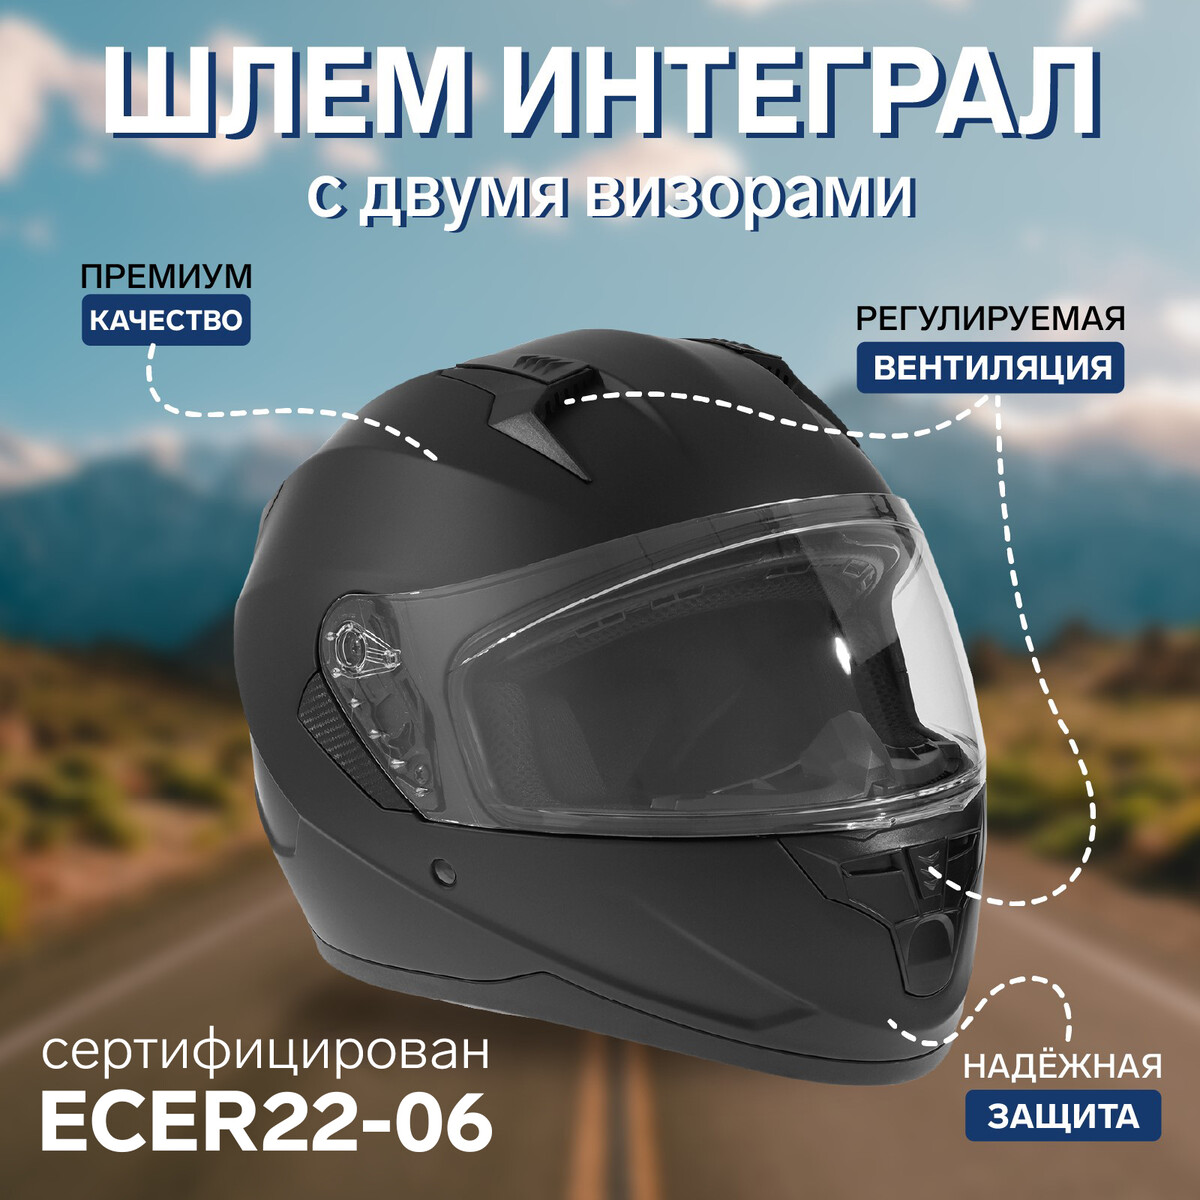 Шлем интеграл с двумя визорами, размер m (57-58), модель bld-m67e, черный матовый всуперечь потоку